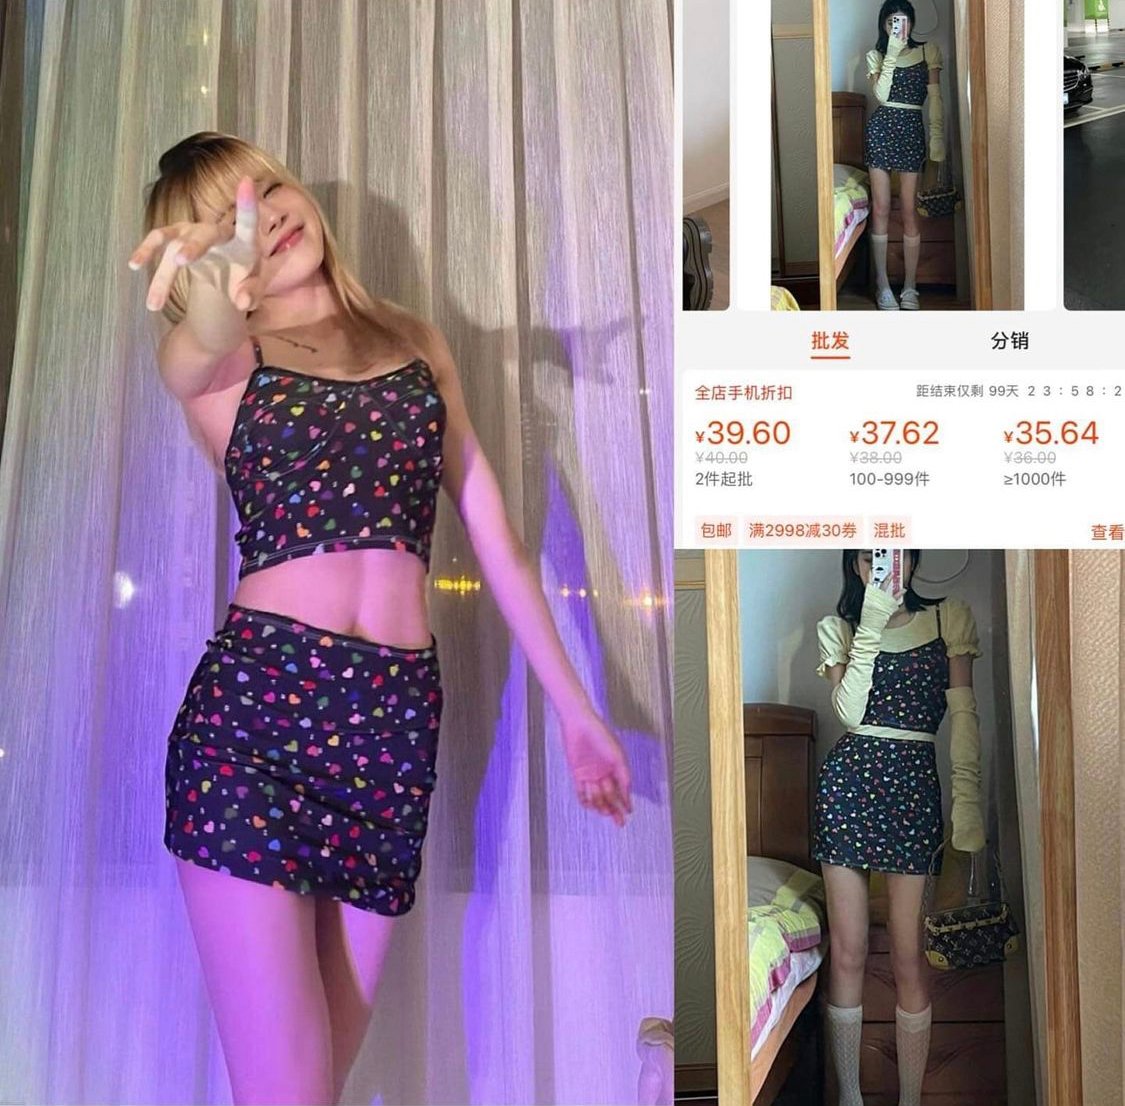 Trên MXH, netizen không ngừng đặt ra câu hỏi cho style của cô Trâm. Nhiều người cho rằng, phải chăng thiếu đi sự hậu thuẫn từ bạn trai nên người đẹp đã chuyển sang gắn bó với các món đồ bình dị trên Taobao?